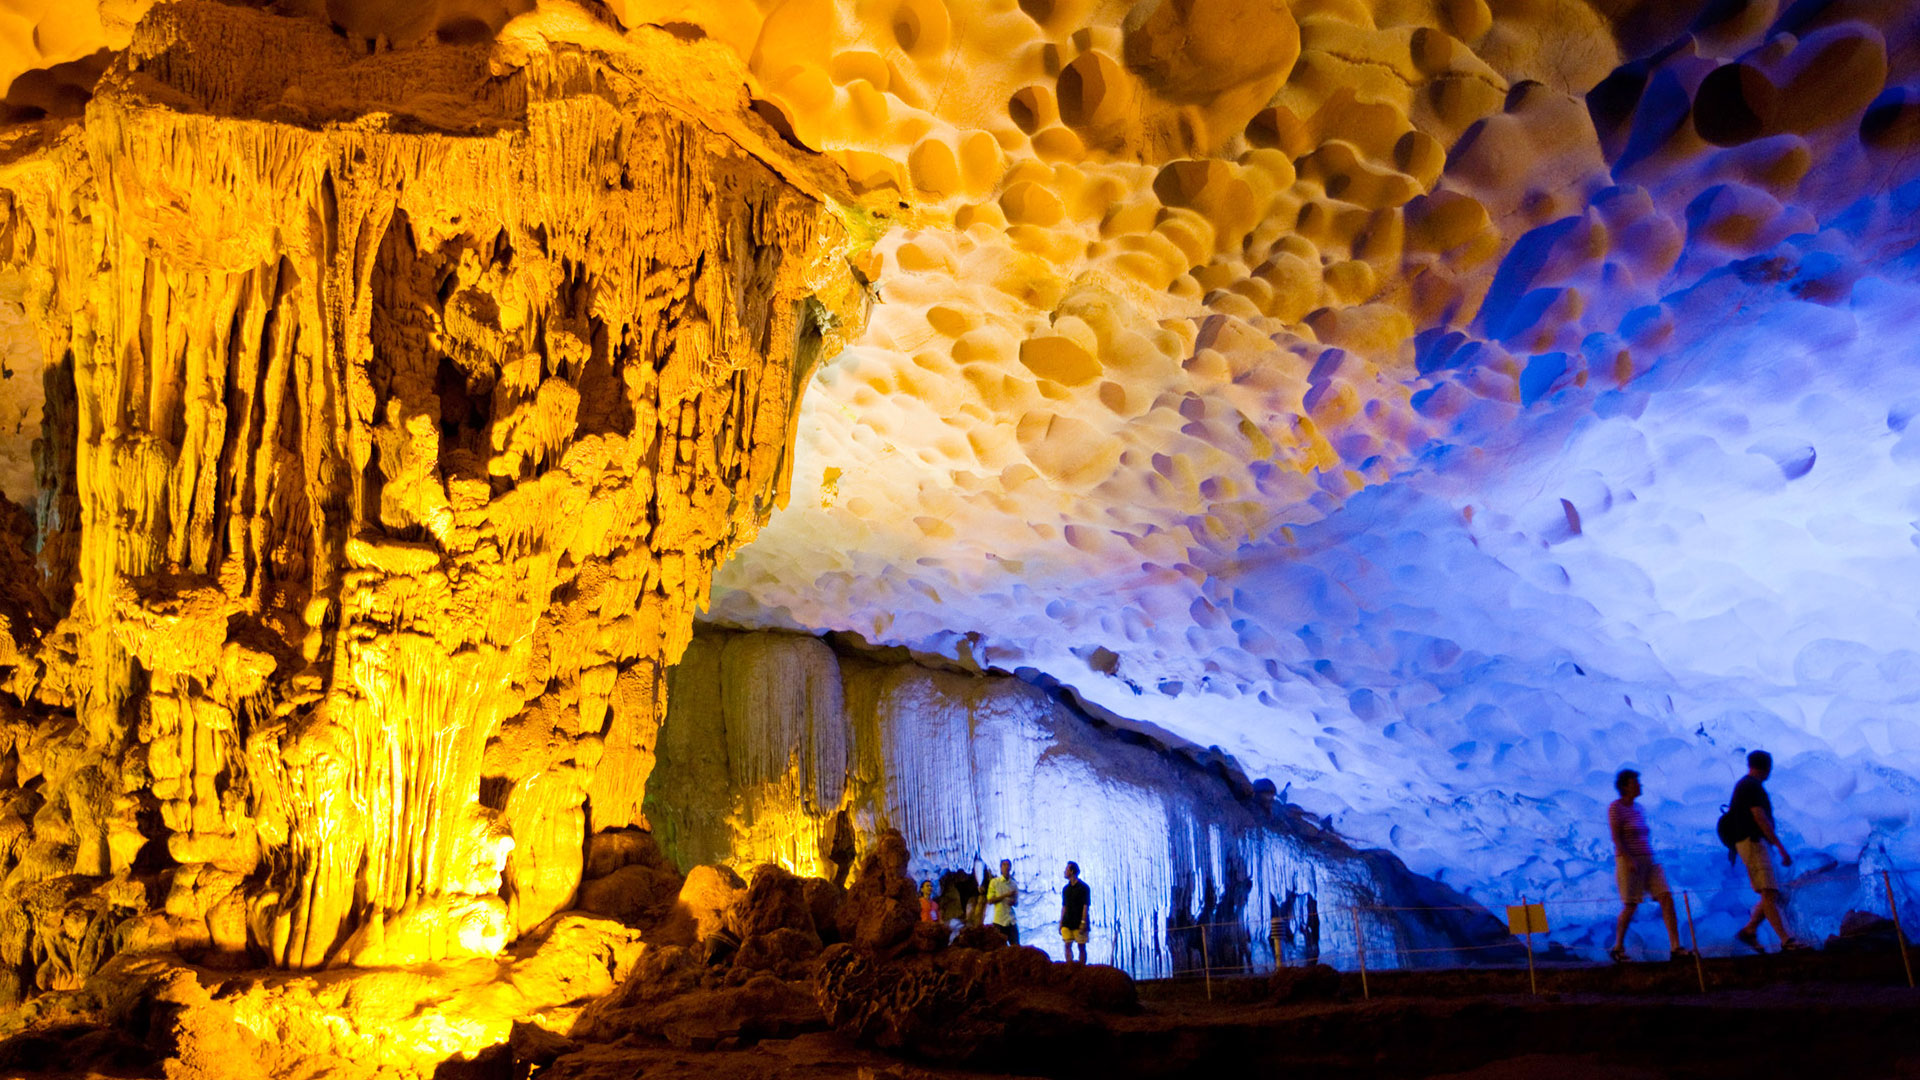 Exploring Hang Sung Sot Cave